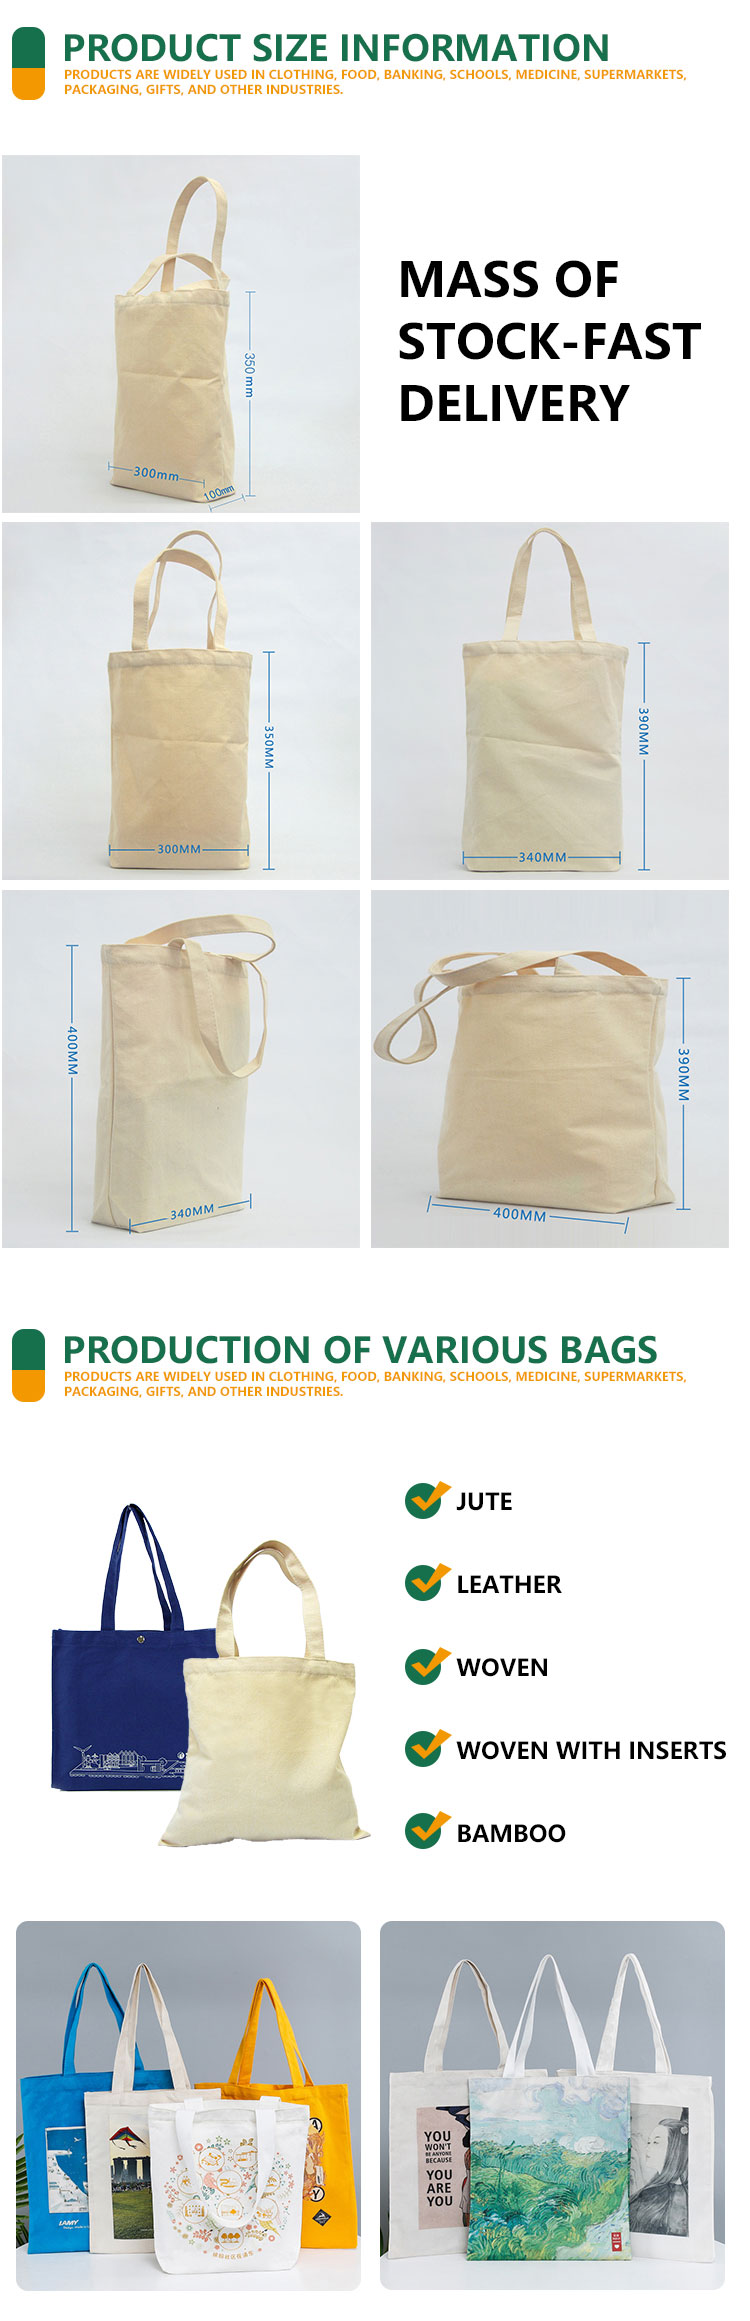 custom organic tote bags